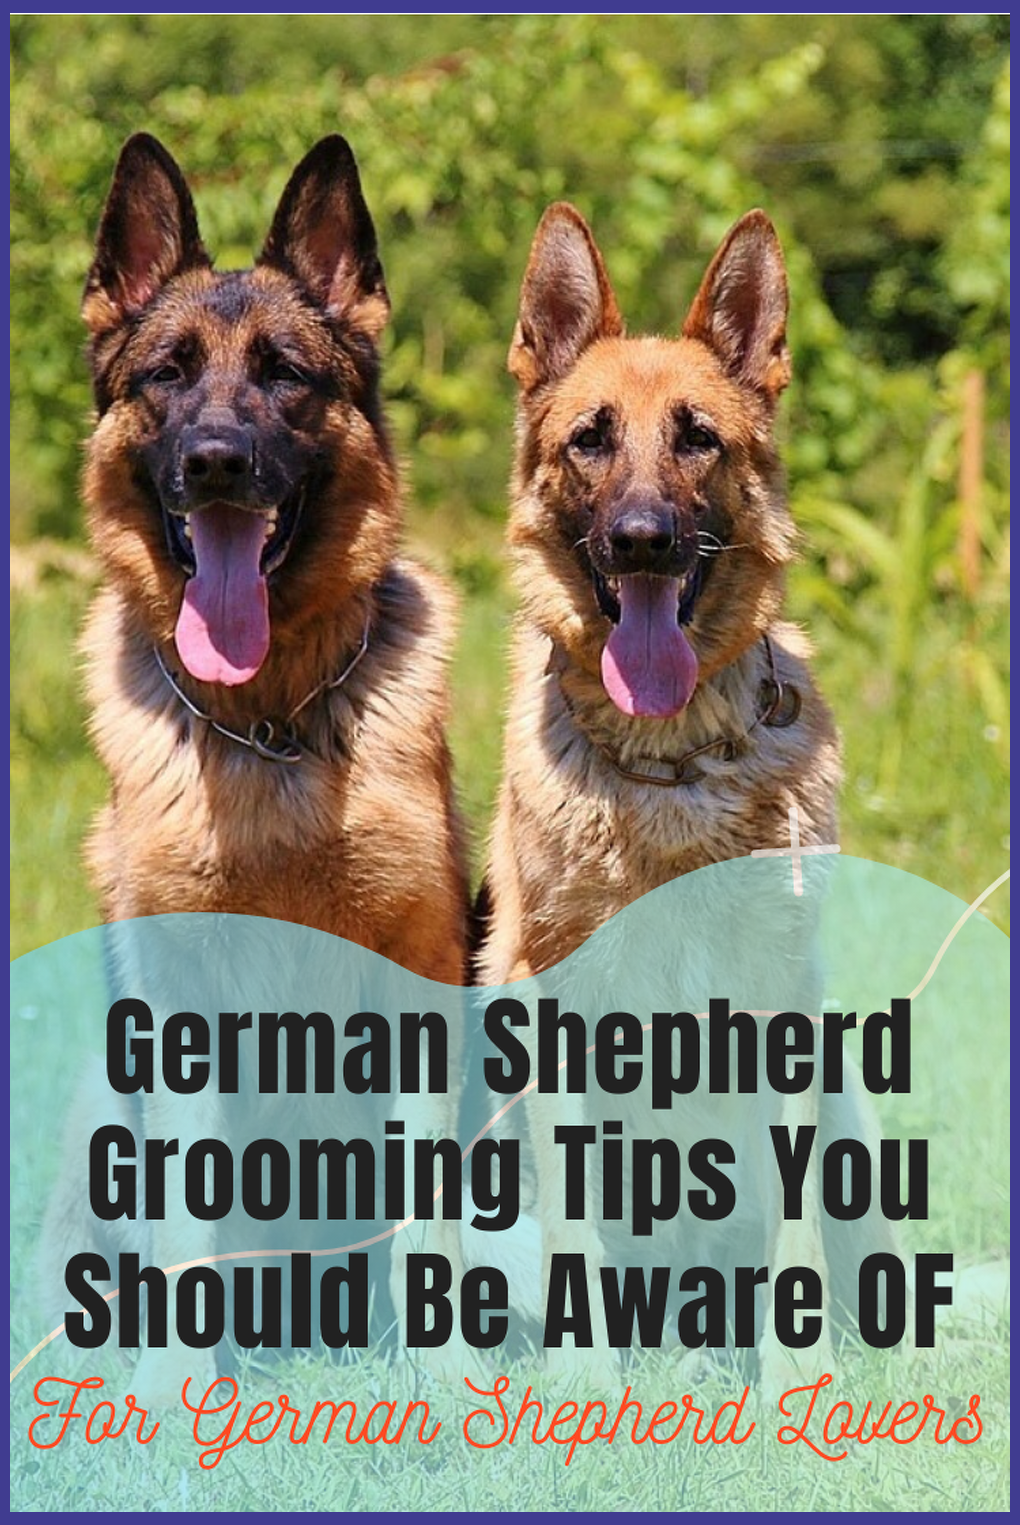 Dog Grooming Tips for German Shepherds